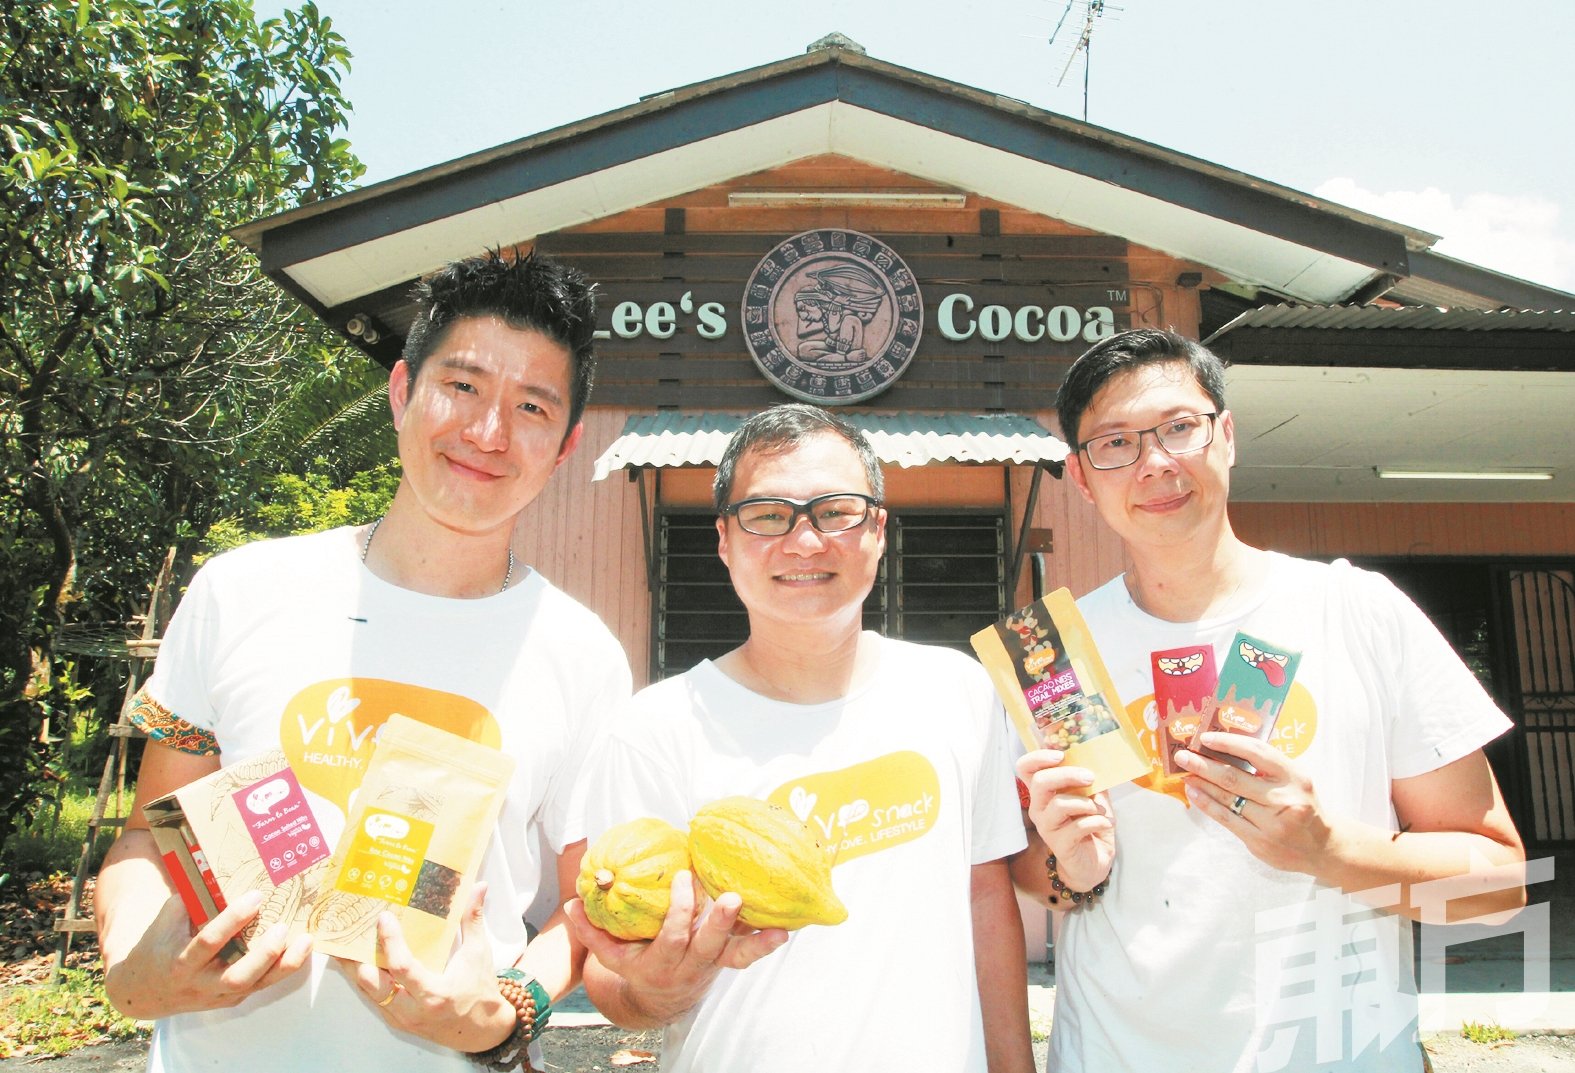 许闻为（左起）、李顺昌及谭金广伟向记者展示由他们出产的Vive Snack可可产品，此产品不仅是纯本地品牌，且不少为大马独创的可可产品。